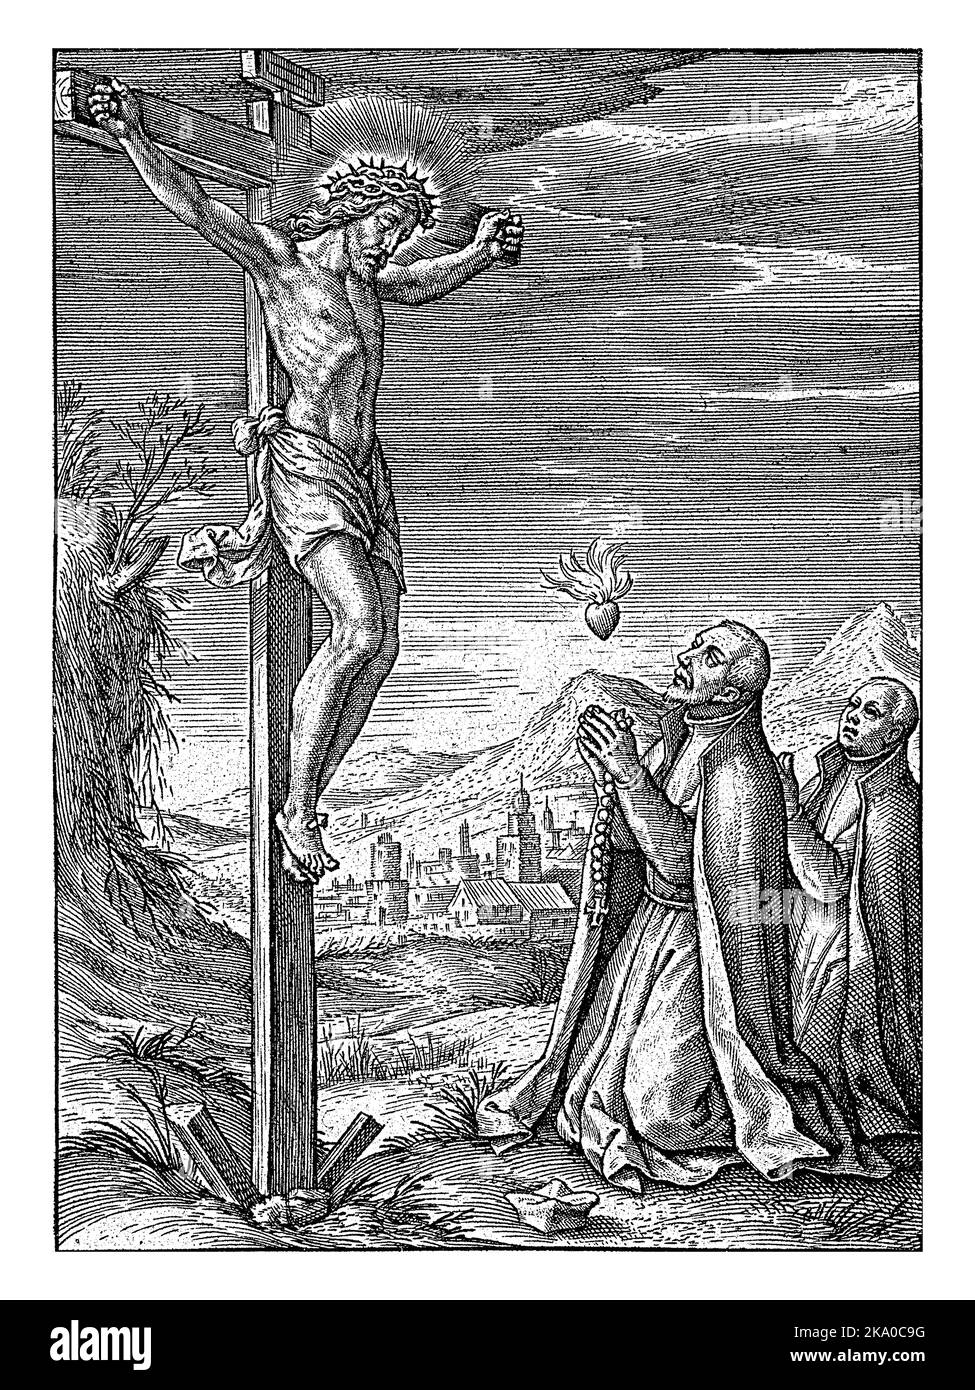 Gekreuzigter Christus verehrt von Franciscus Xavier und Stanislaus Kostka, Hieronymus Wierix, 1563 - vor 1619 hängt Christus am Kreuz. Stockfoto